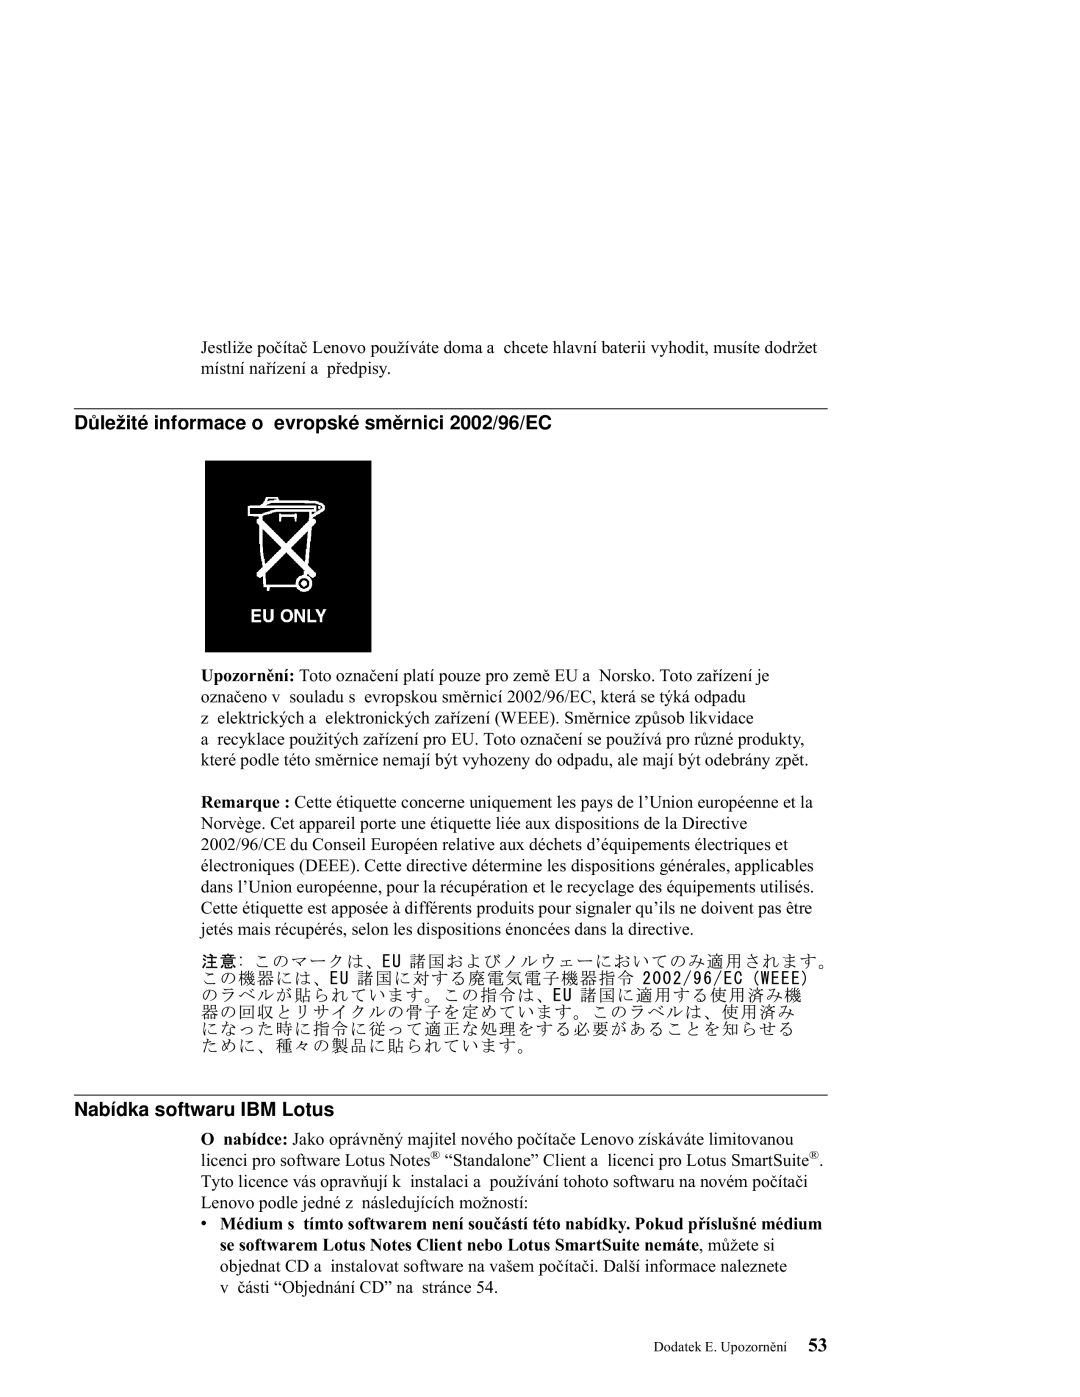 Lenovo C100 manual Důležité informace o evropské směrnici 2002/96/EC, Nabídka softwaru IBM Lotus 